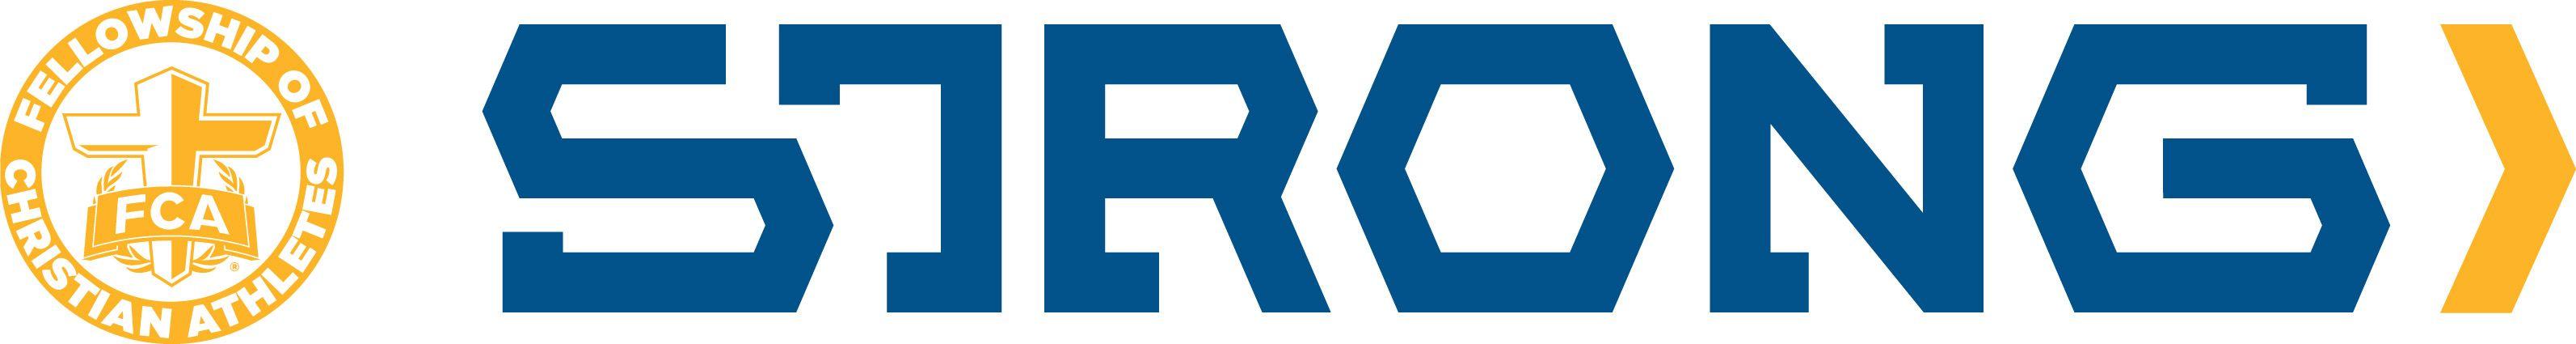 FCA Strong Logo - Campus | Lake Oconee FCA